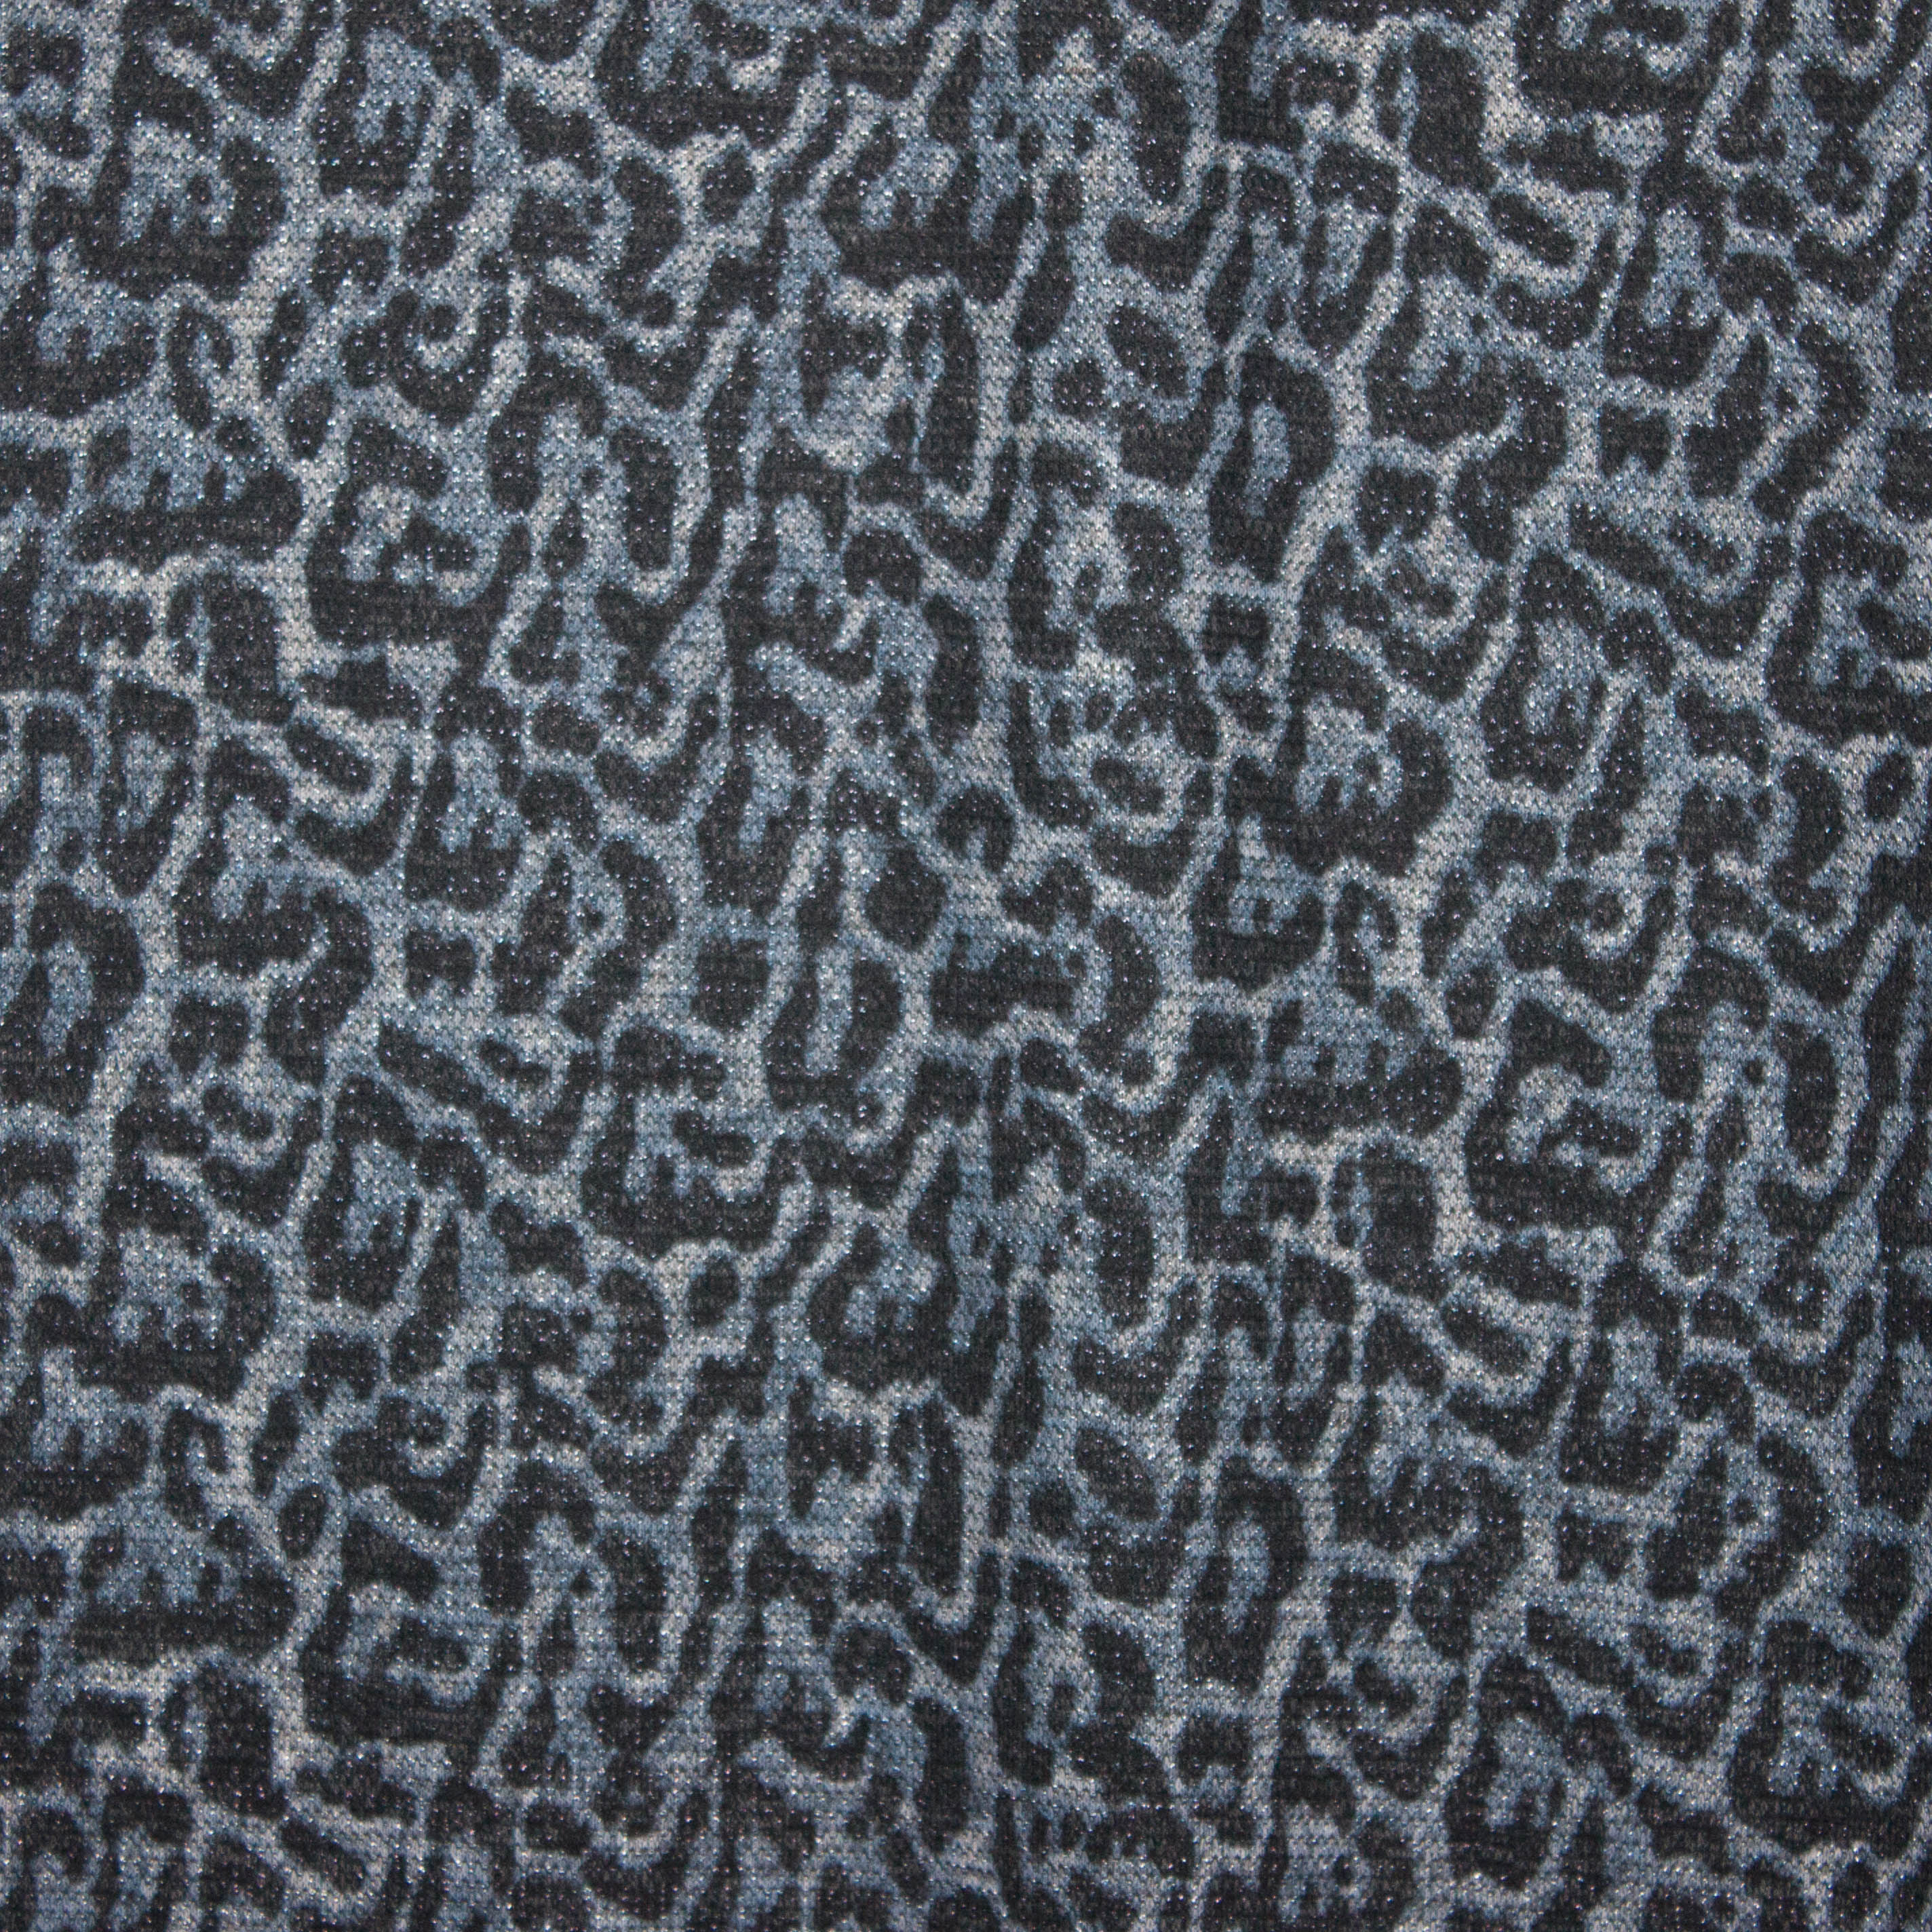 Grijsblauw breitje met pantervlekken en zilverdraad